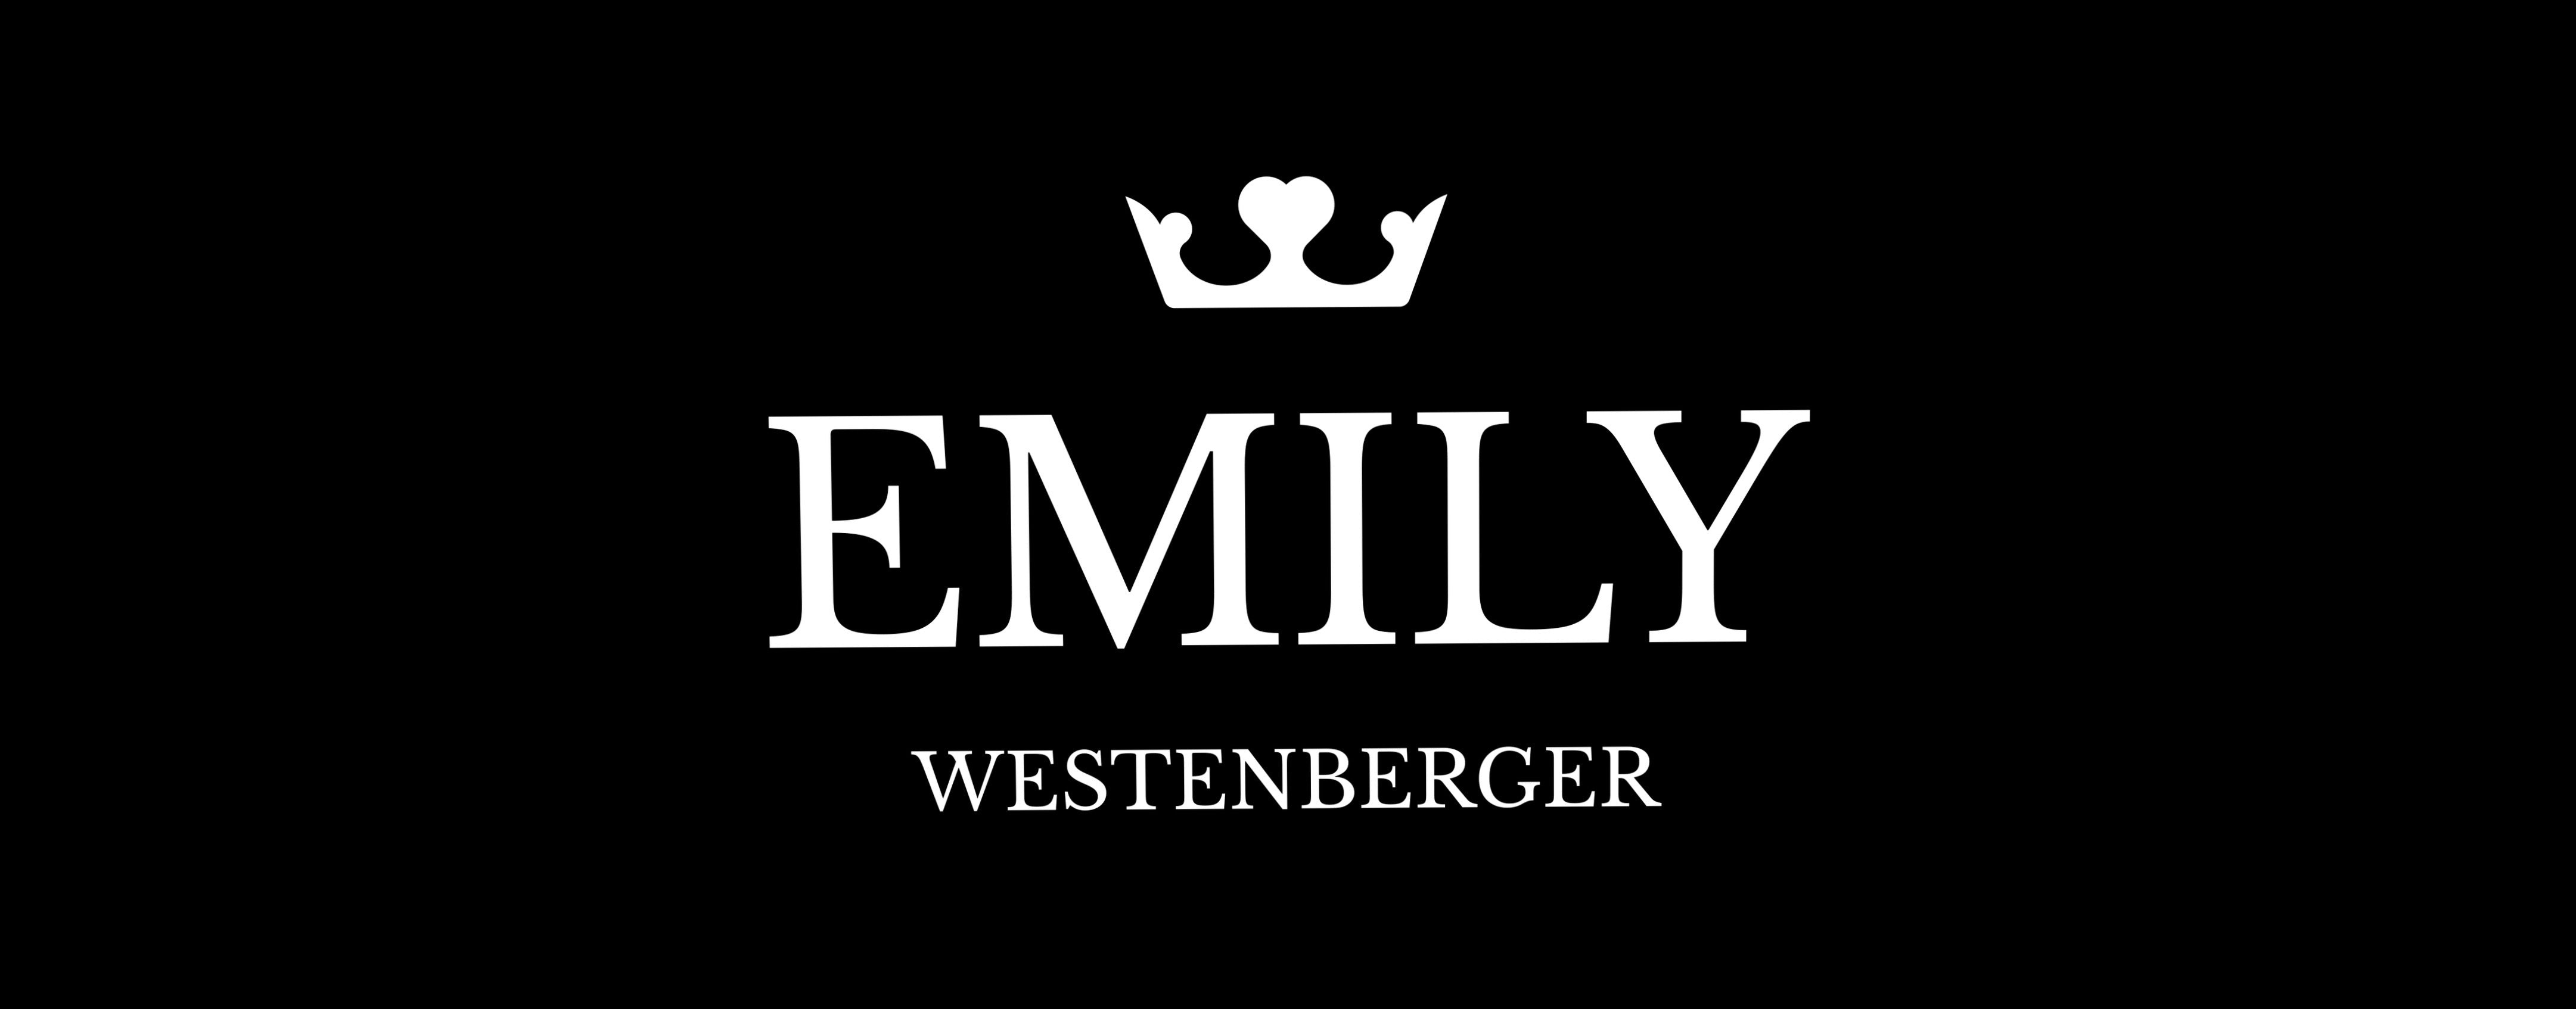 Emily Westenberger Gift Card | Luxury Fashion